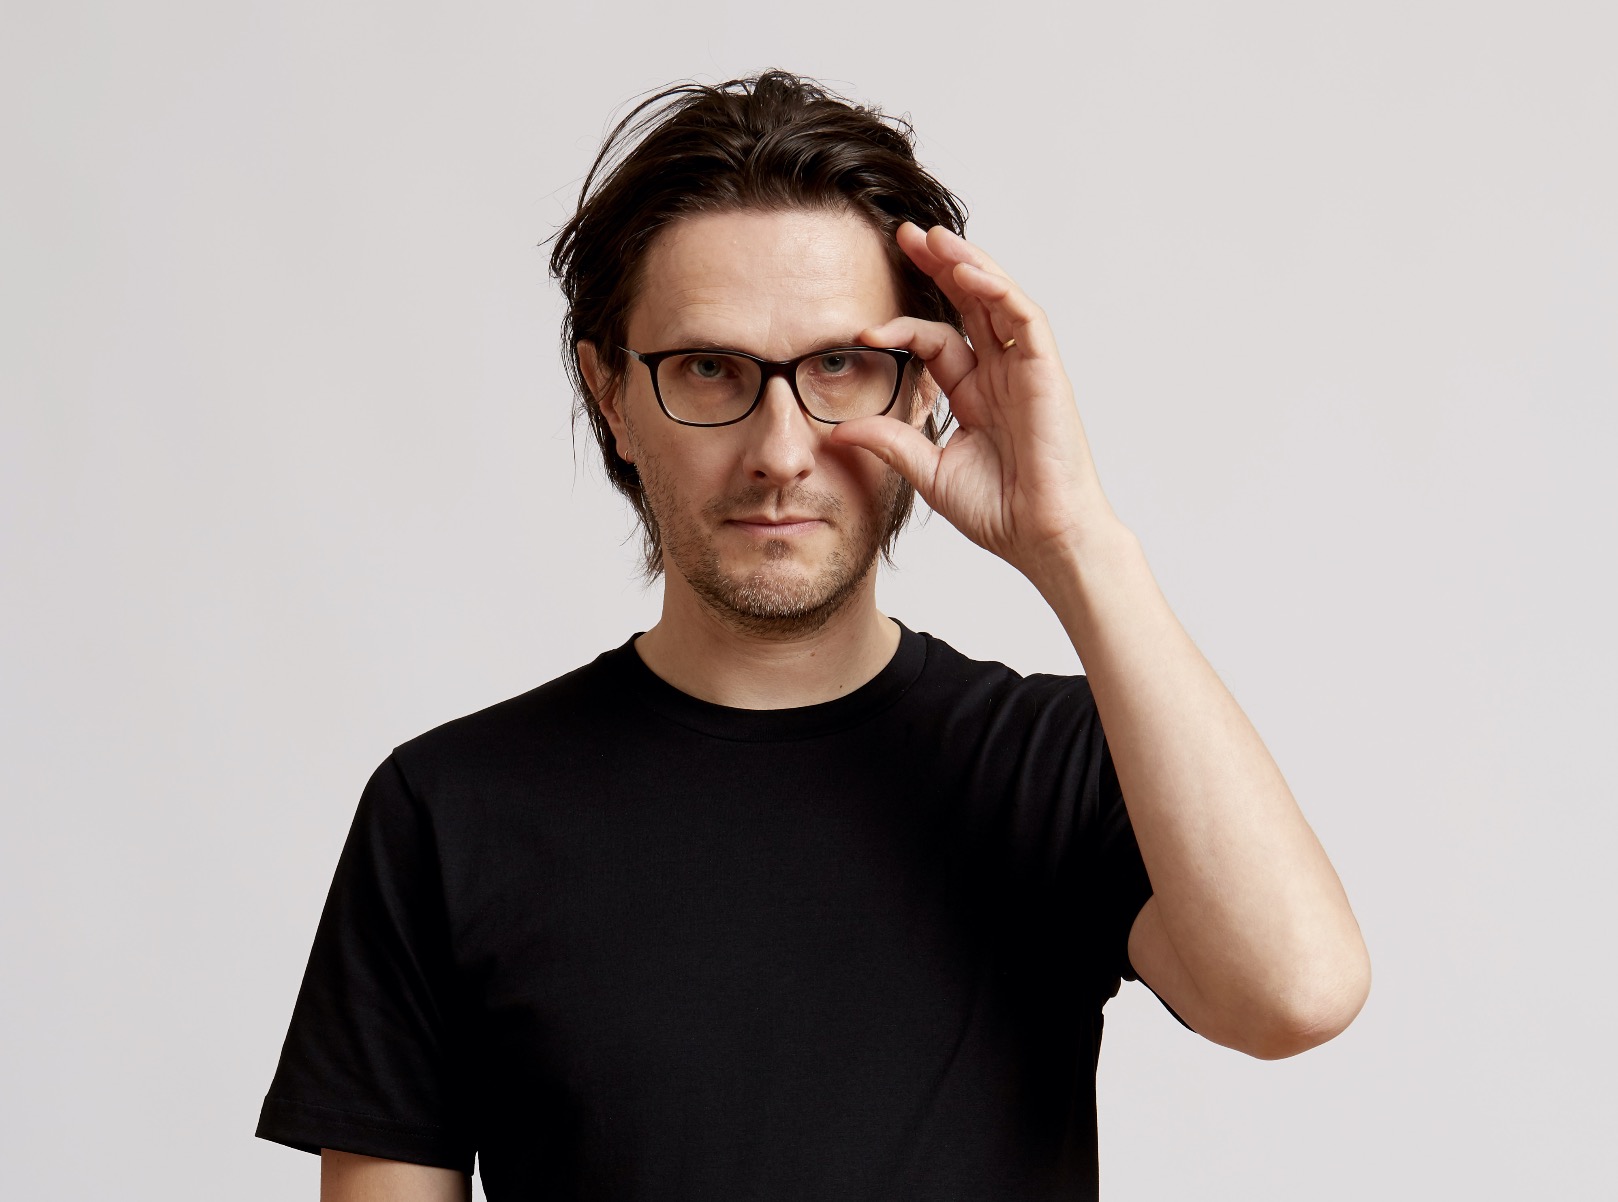 Steven Wilson Yeni Albümü Yeni Şarkıyla Duyurdu “Personal Shopper” - Rotka